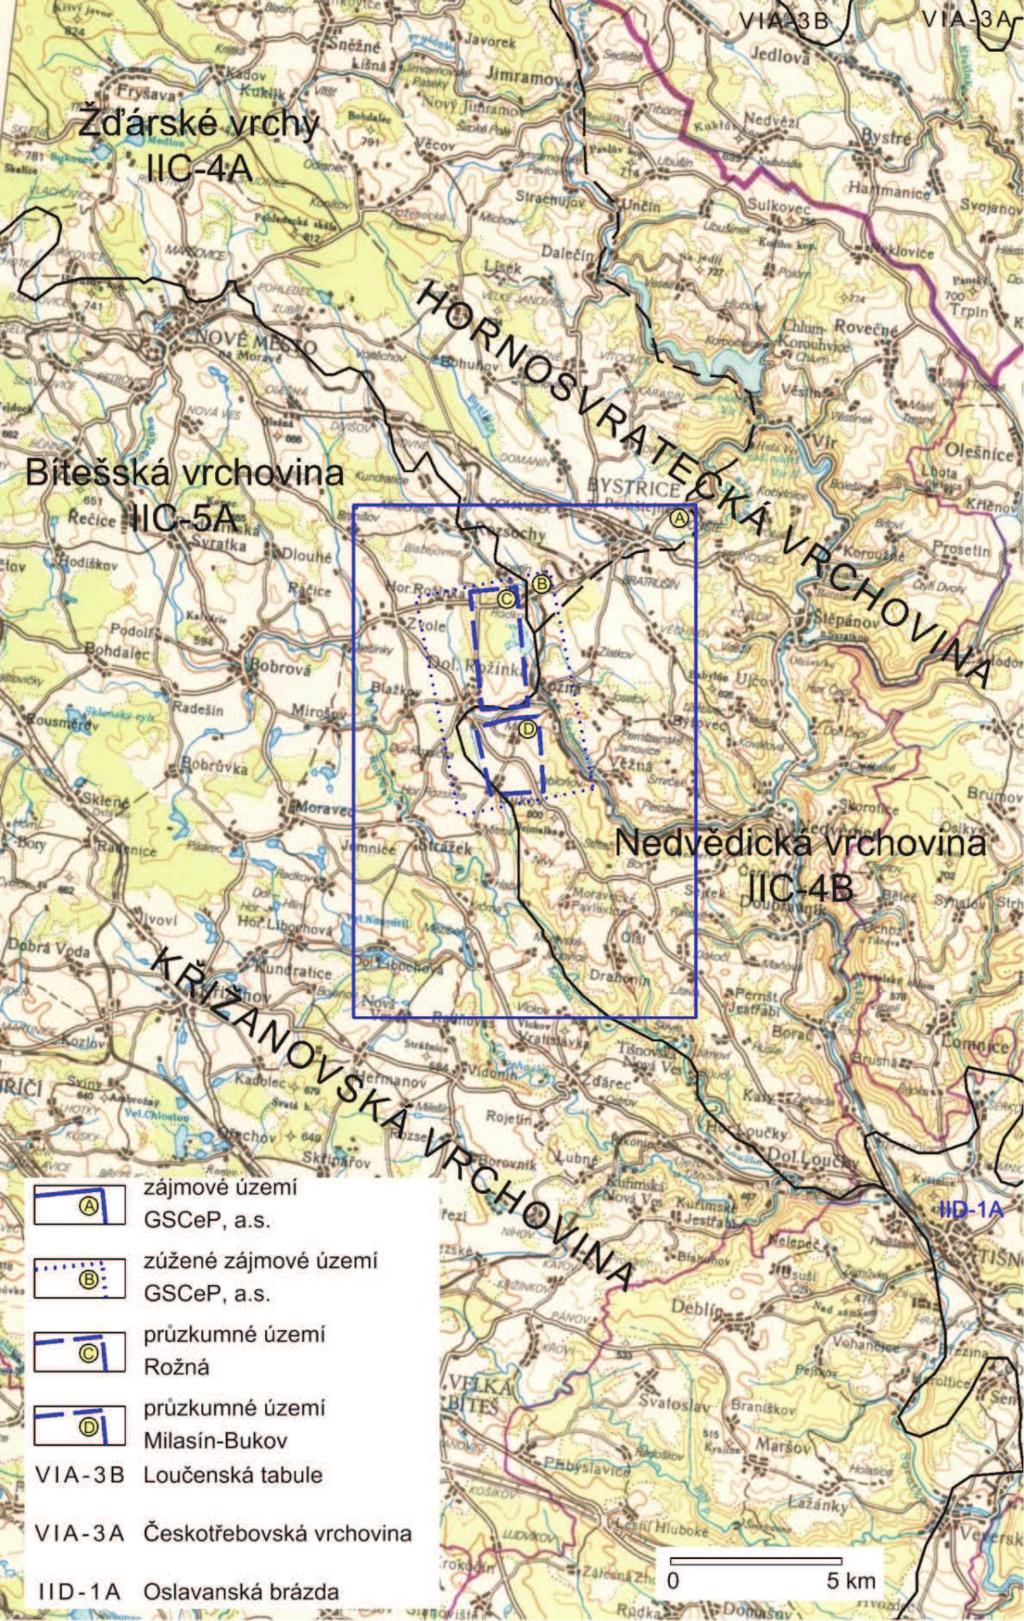 Obrázek 2: Geomorfologické členění území listu Brno se znázorněným navrhovaným zásobníkem plynu (Hájek a kol., 2011, podle M.